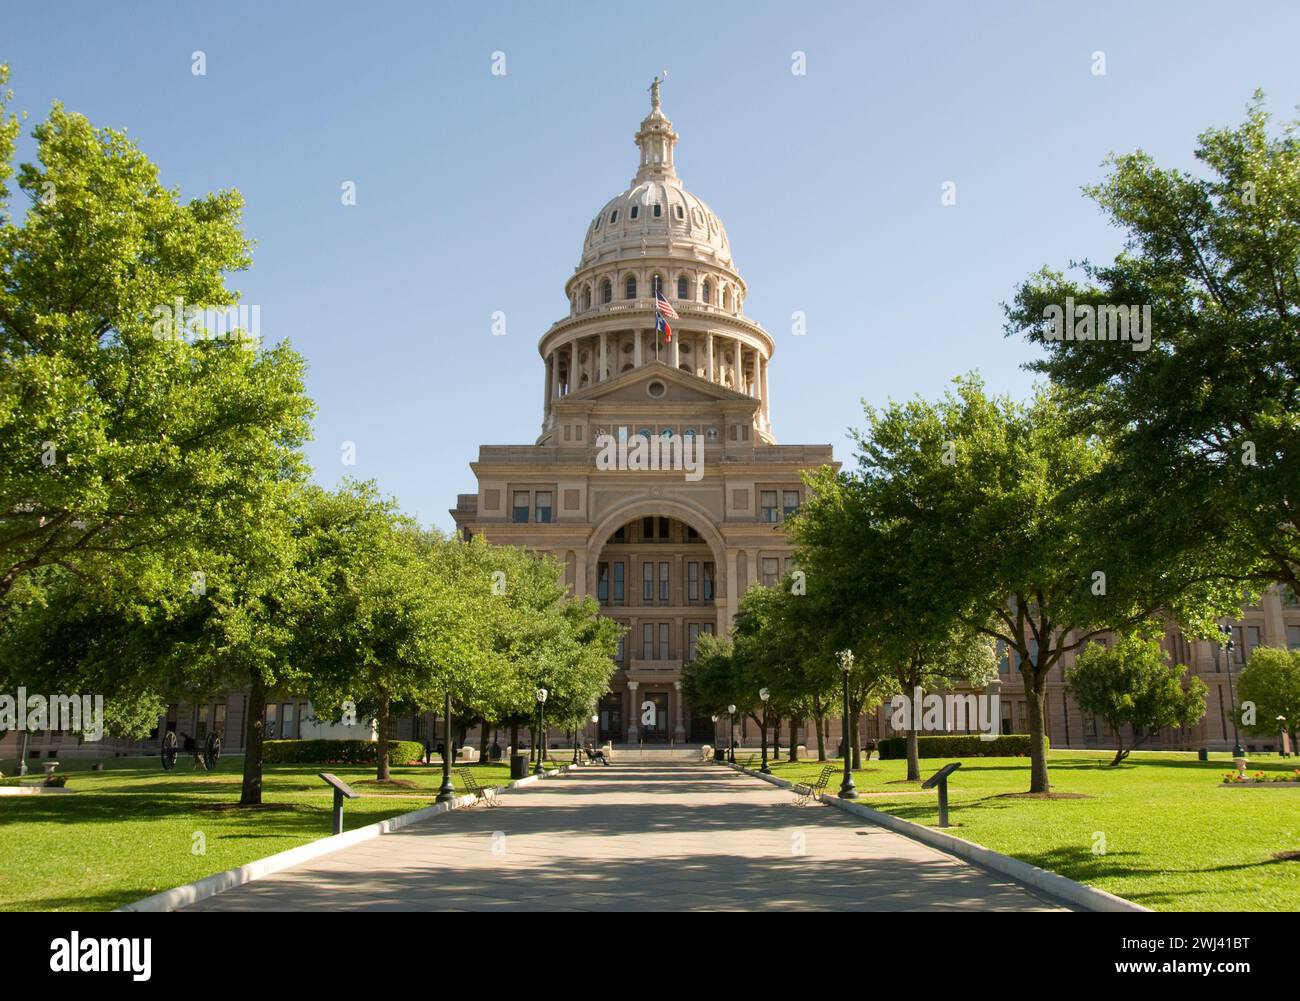 Le capitole de l'État du Texas a construit 1888 de granit « rouge coucher de soleil » à partir d'une carrière voisine - la plus grande de toutes les capitales d'État - deuxième en taille seulement derrière le Capitole national Banque D'Images